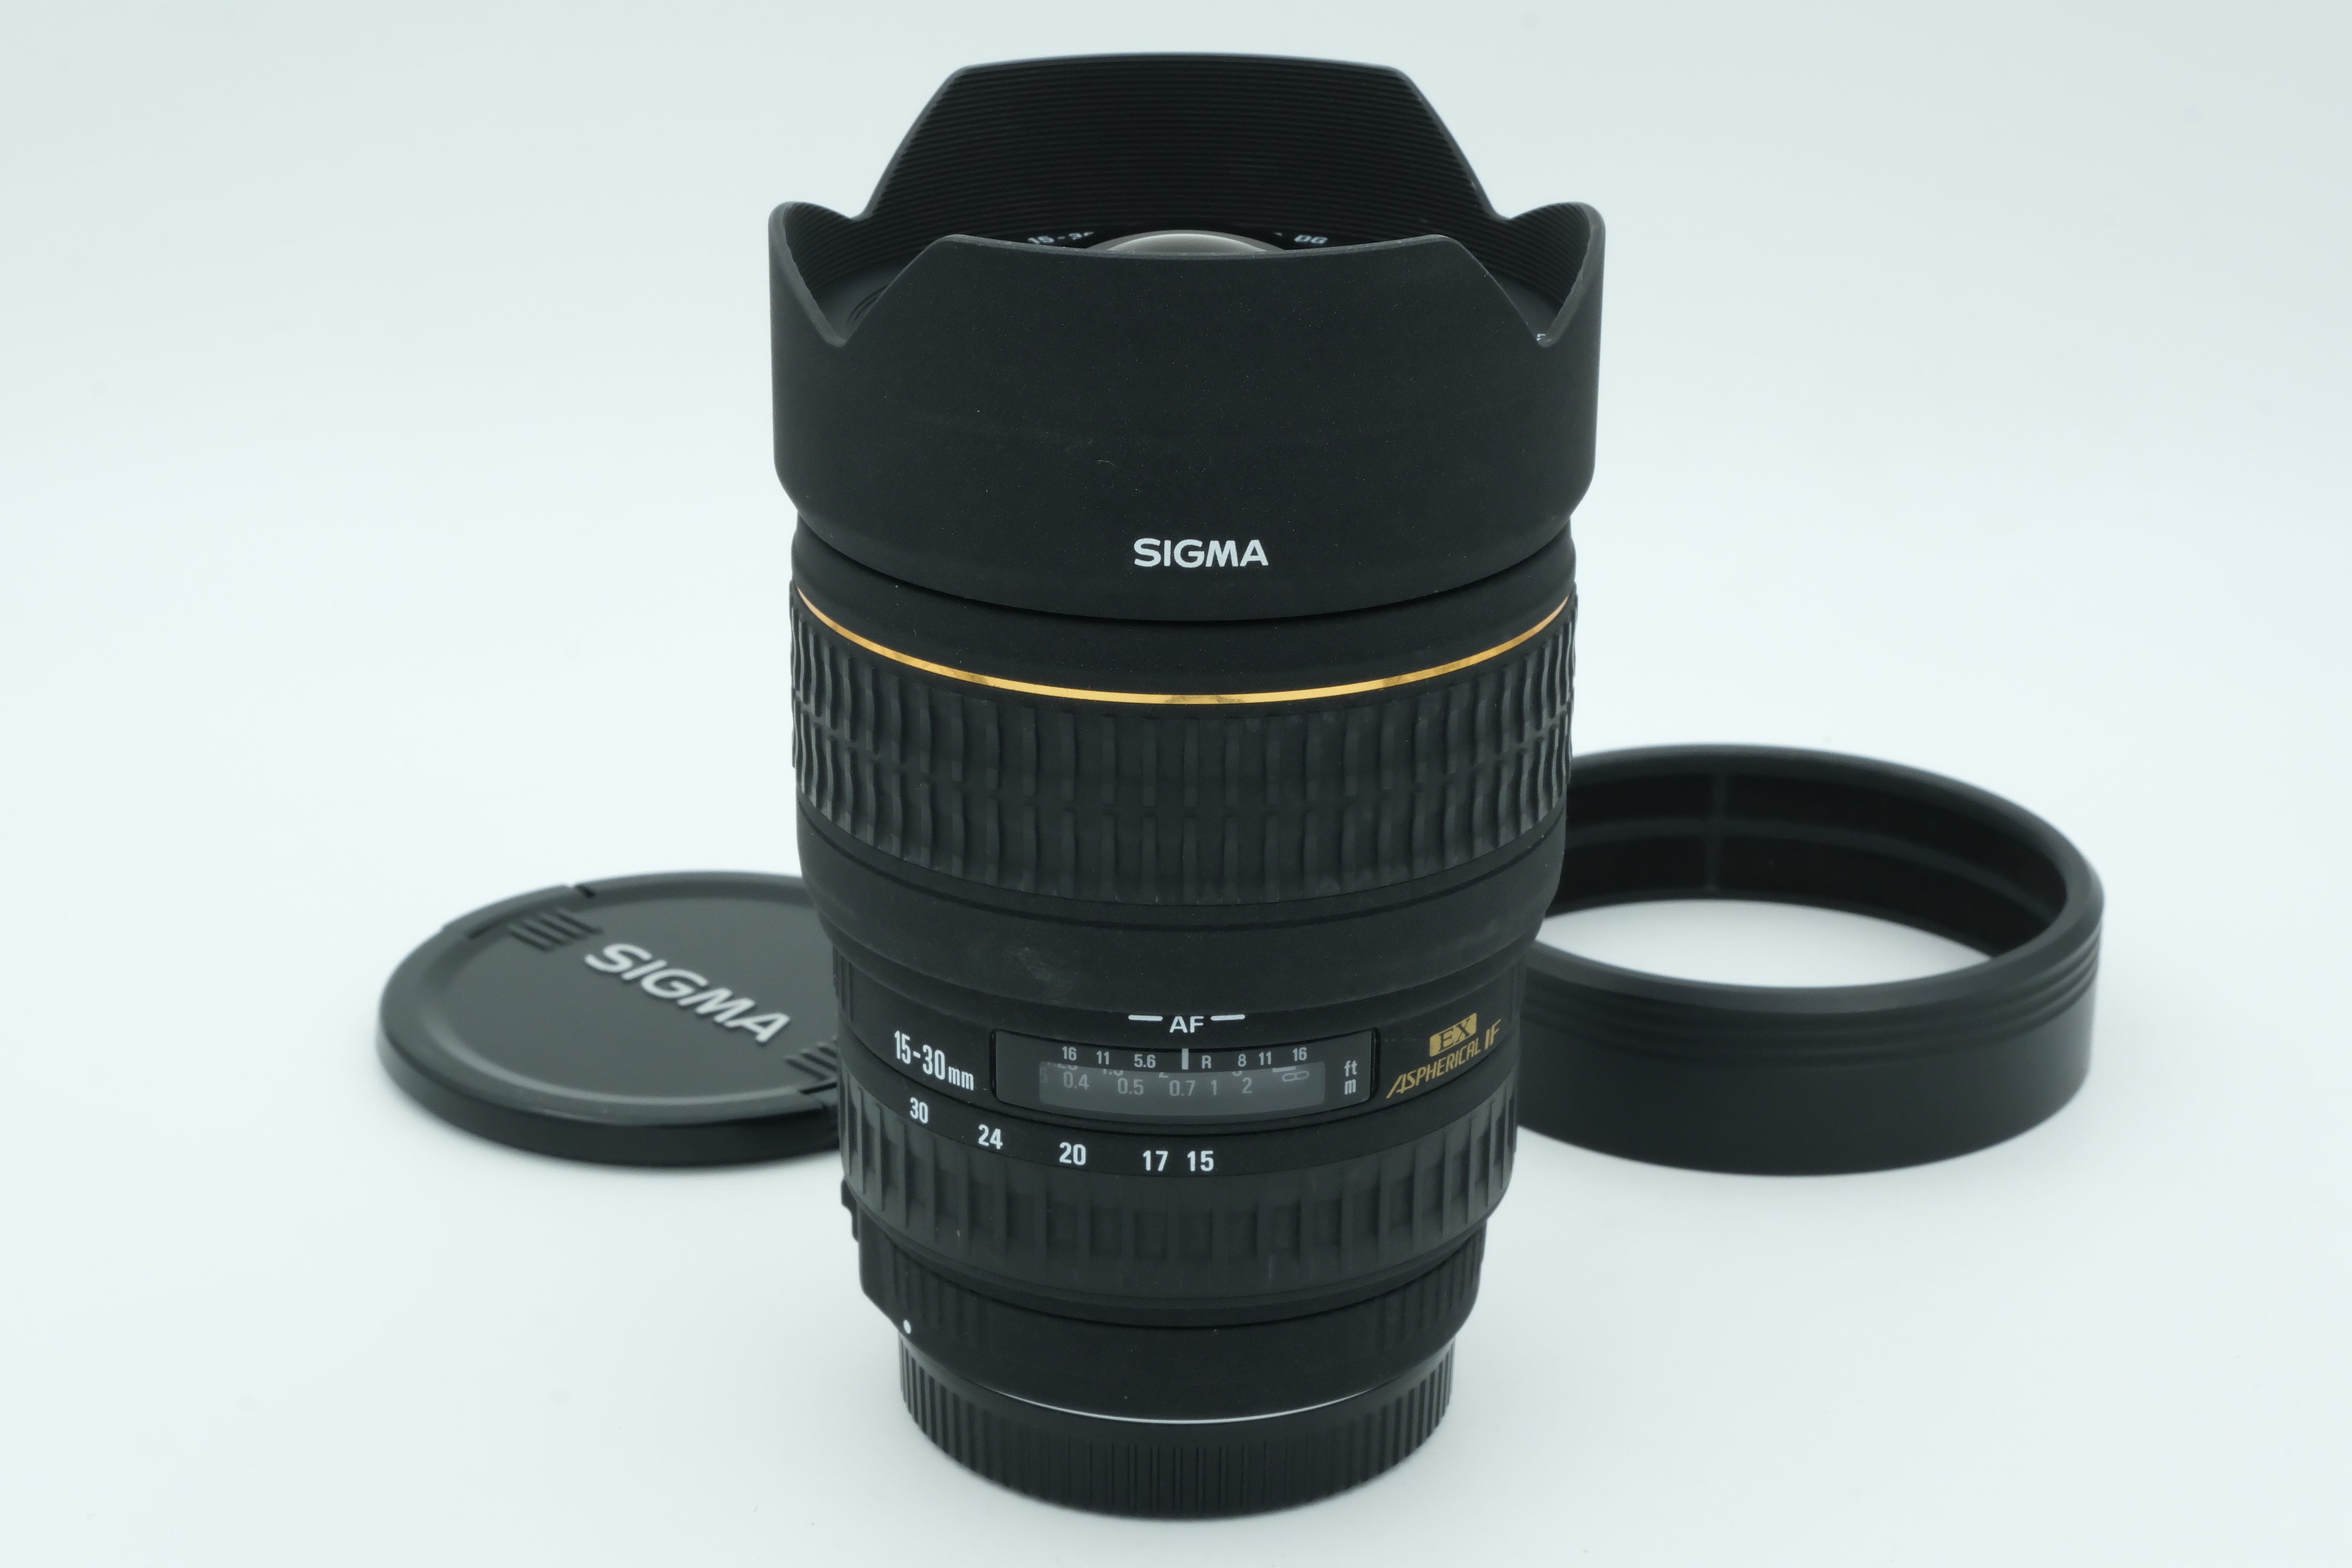 Sigma AF 15-30mm 1:3,5-4,5 DG passend für Vollformat, für Canon